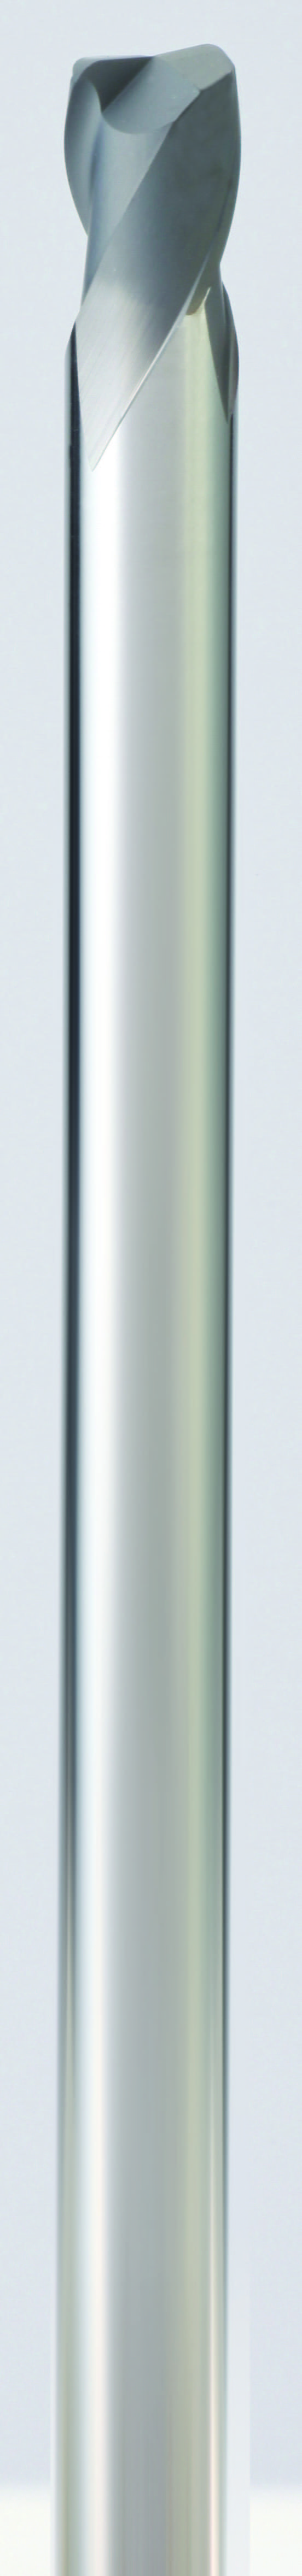 Aufrecht stehender silberner Eckenradiusfräser auf grauem Hintergrund. Die Schnittlänge ist kurz und die Spitze ist flach abgeschnitten.